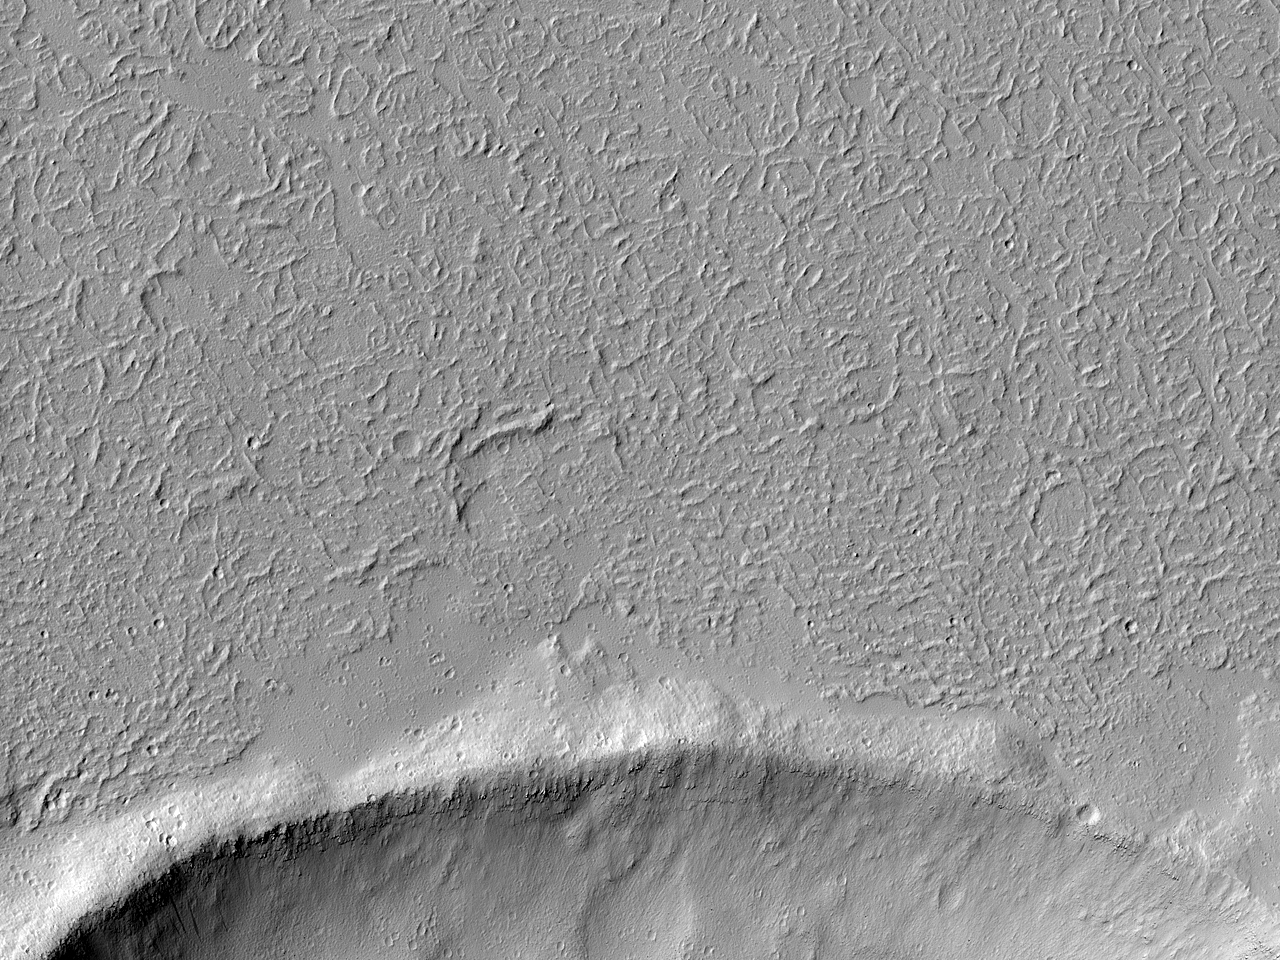 دهانه برخوردی در میان شارش های سوی باختری «ایکوس کازما» (Echus Chasma)